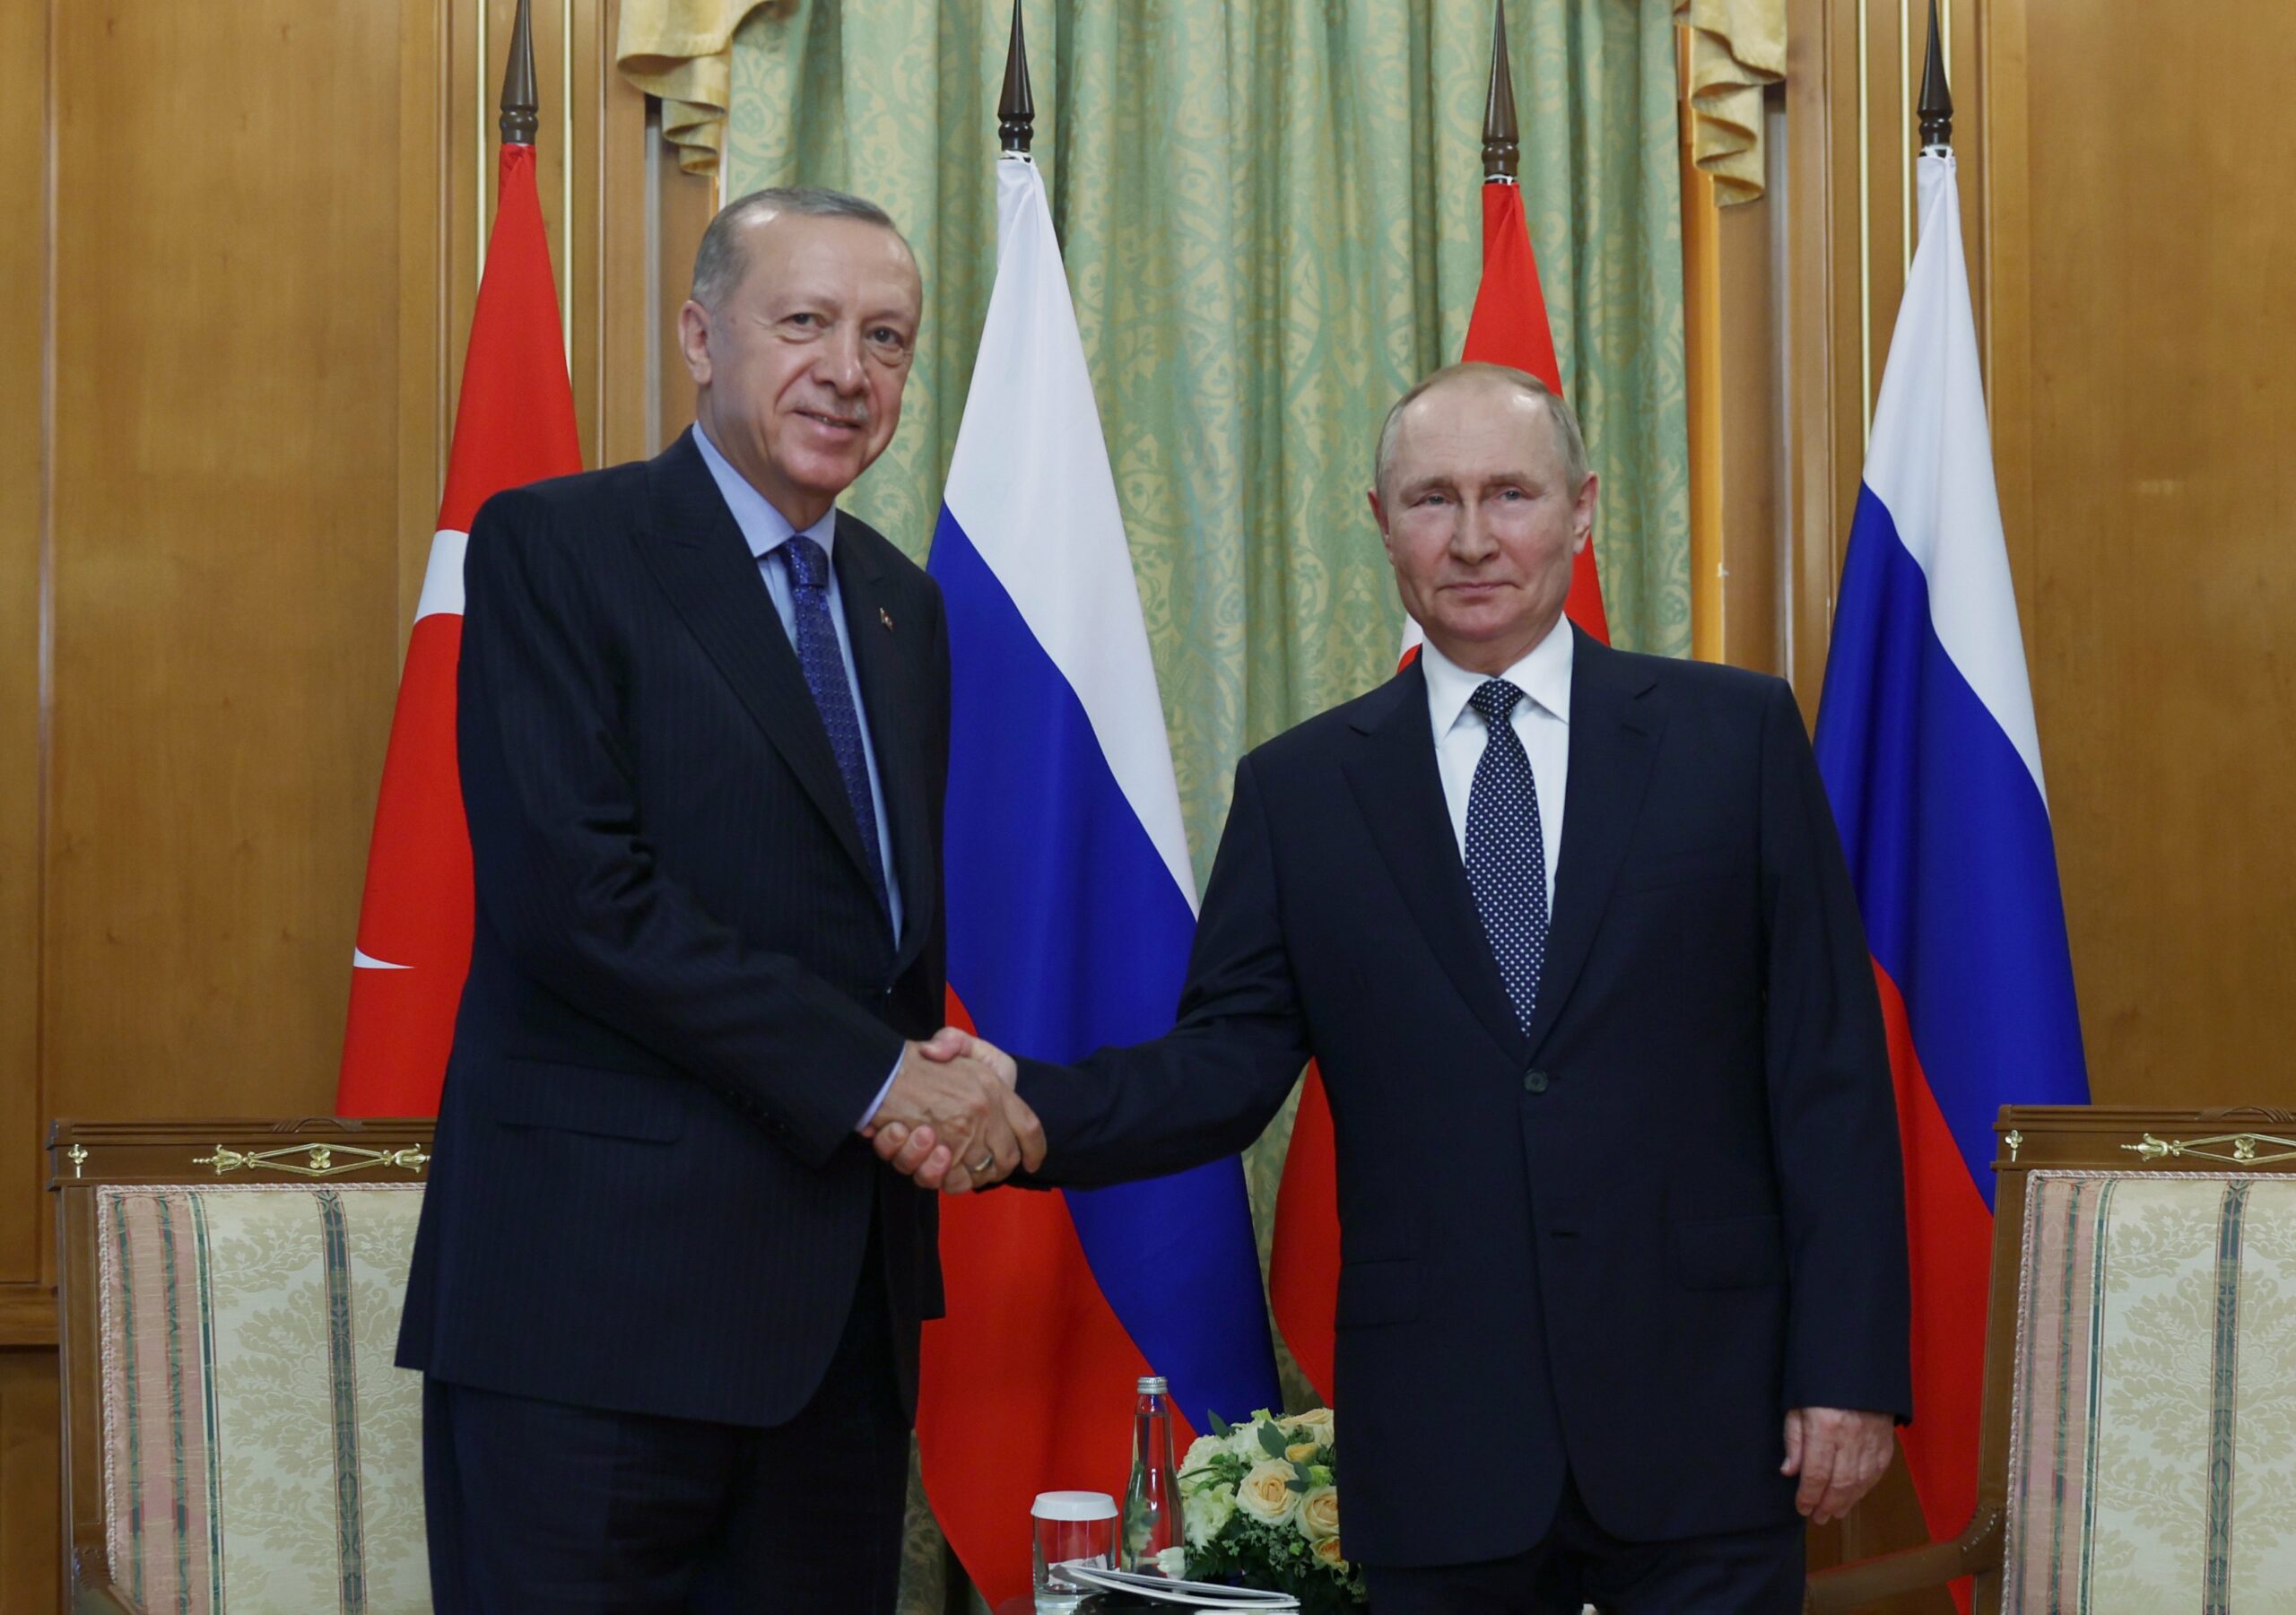 Soçi’de Erdoğan-Putin zirvesi